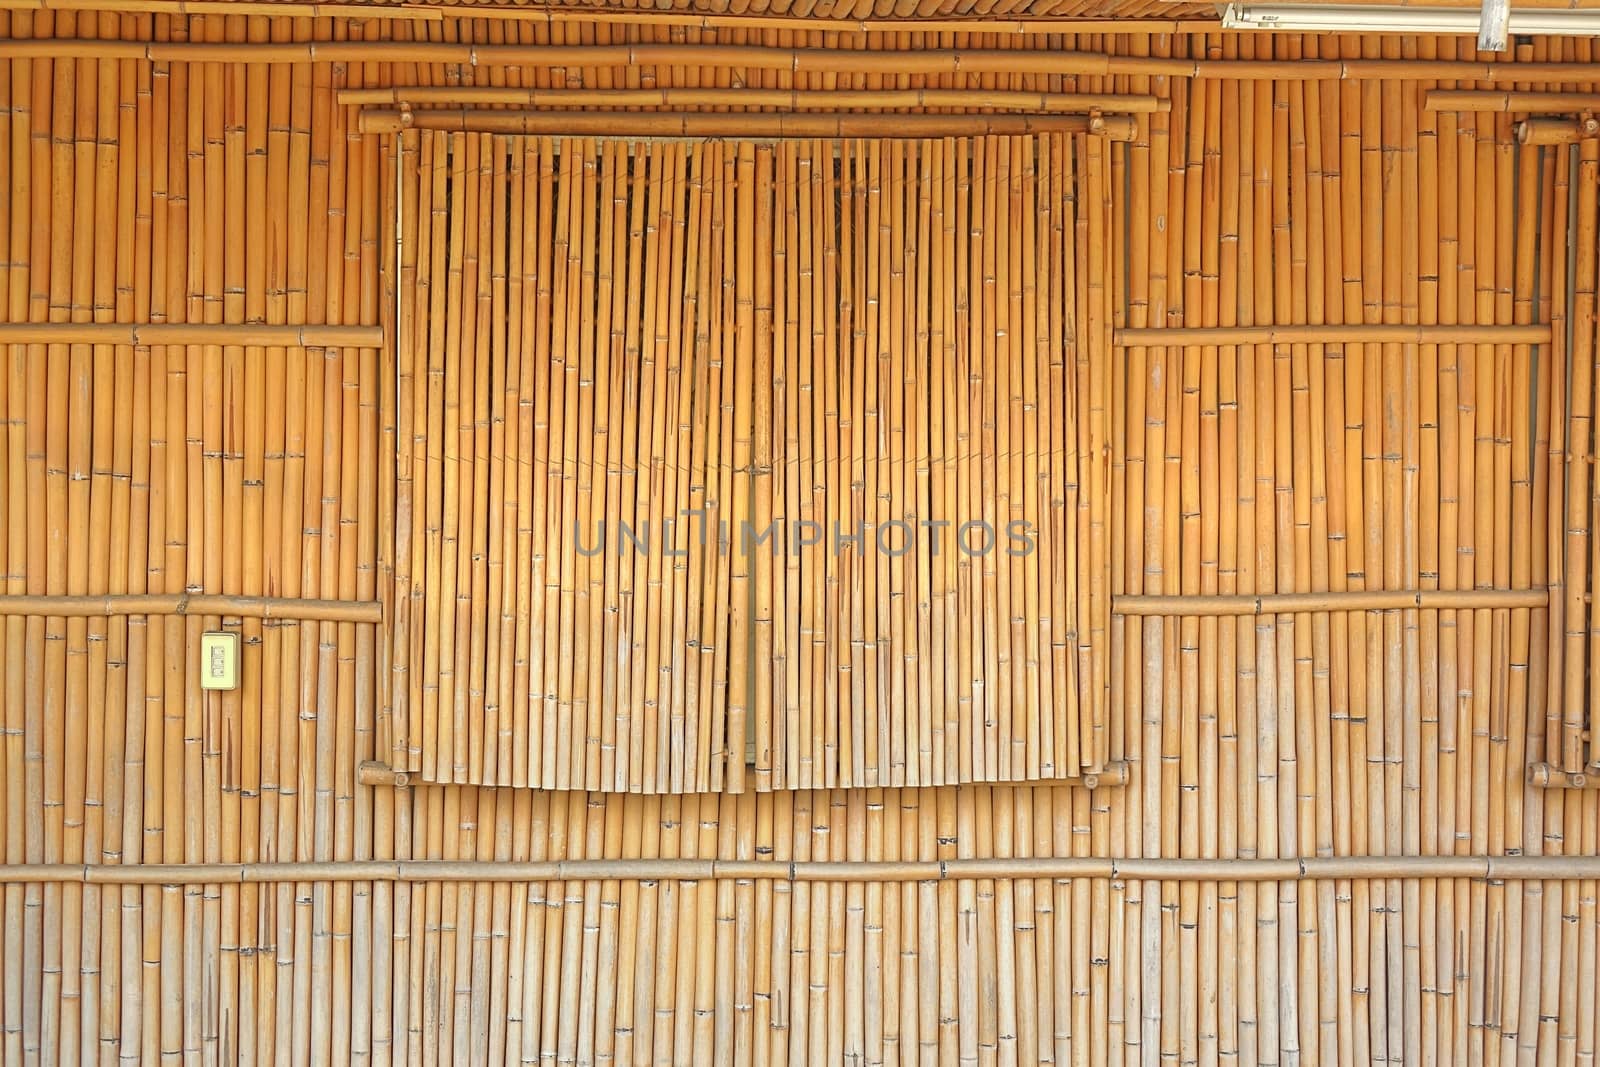 Bamboo Wall and Shutters by shiyali